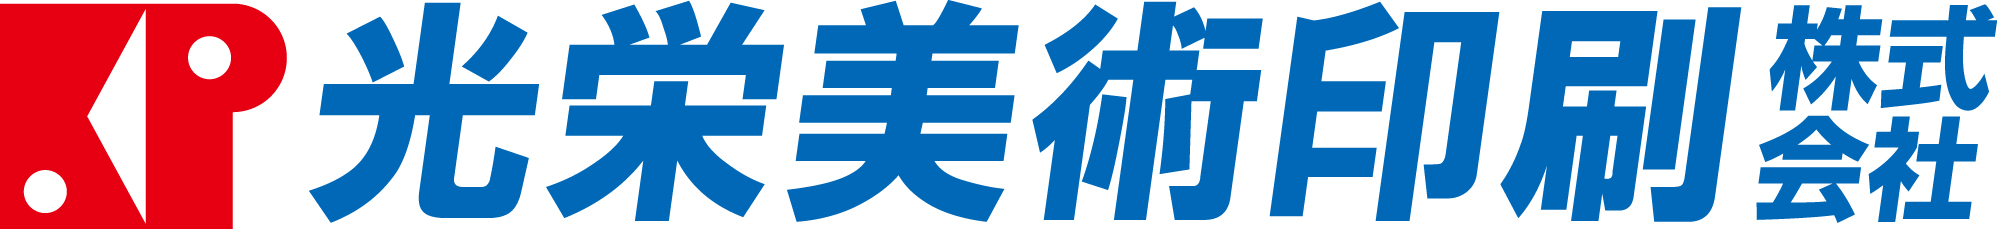 光栄美術印刷(株) ロゴ